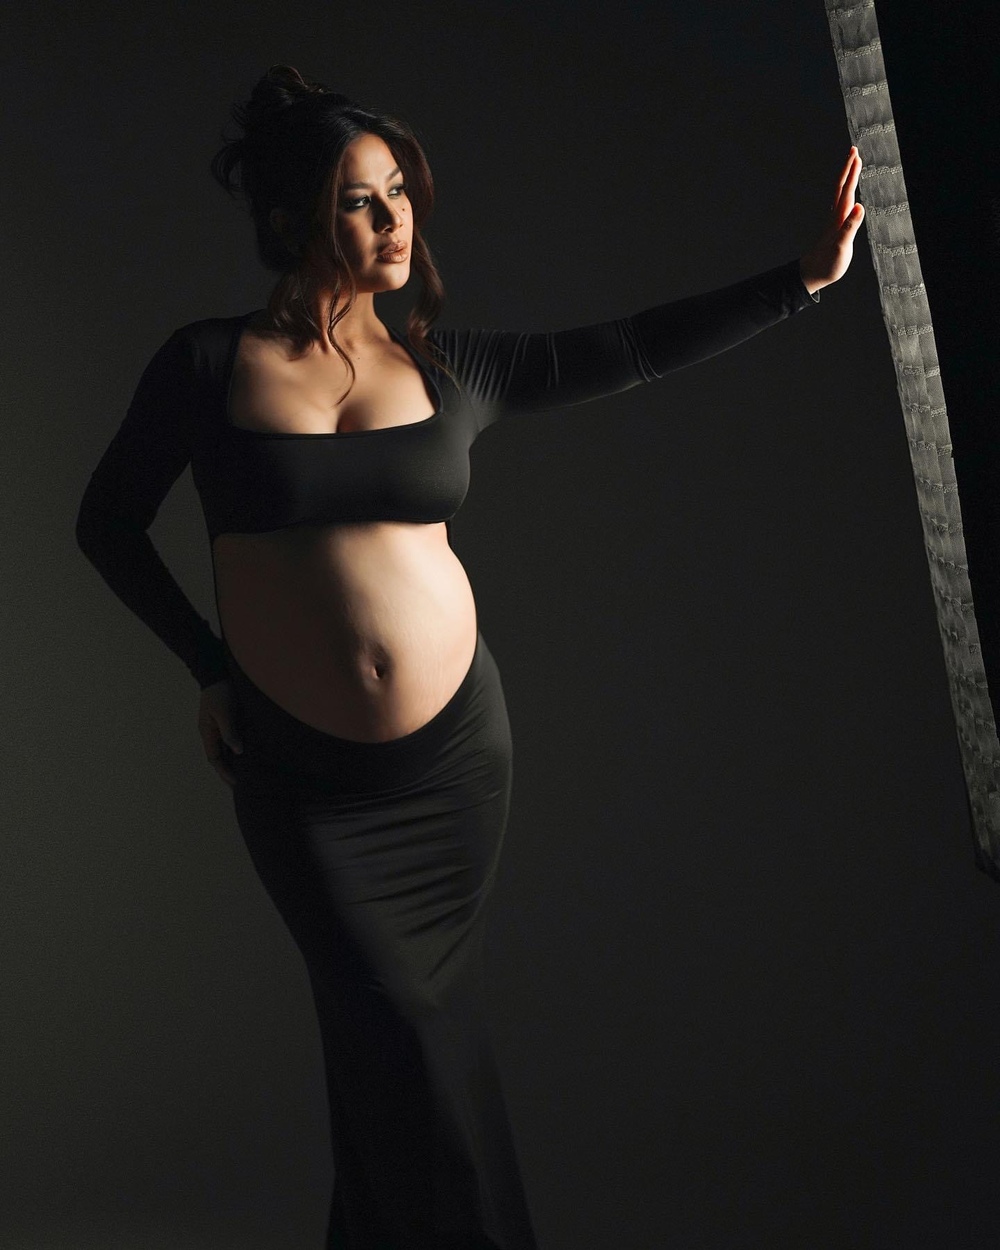 Valerie Concepcion maternity shoot captures 